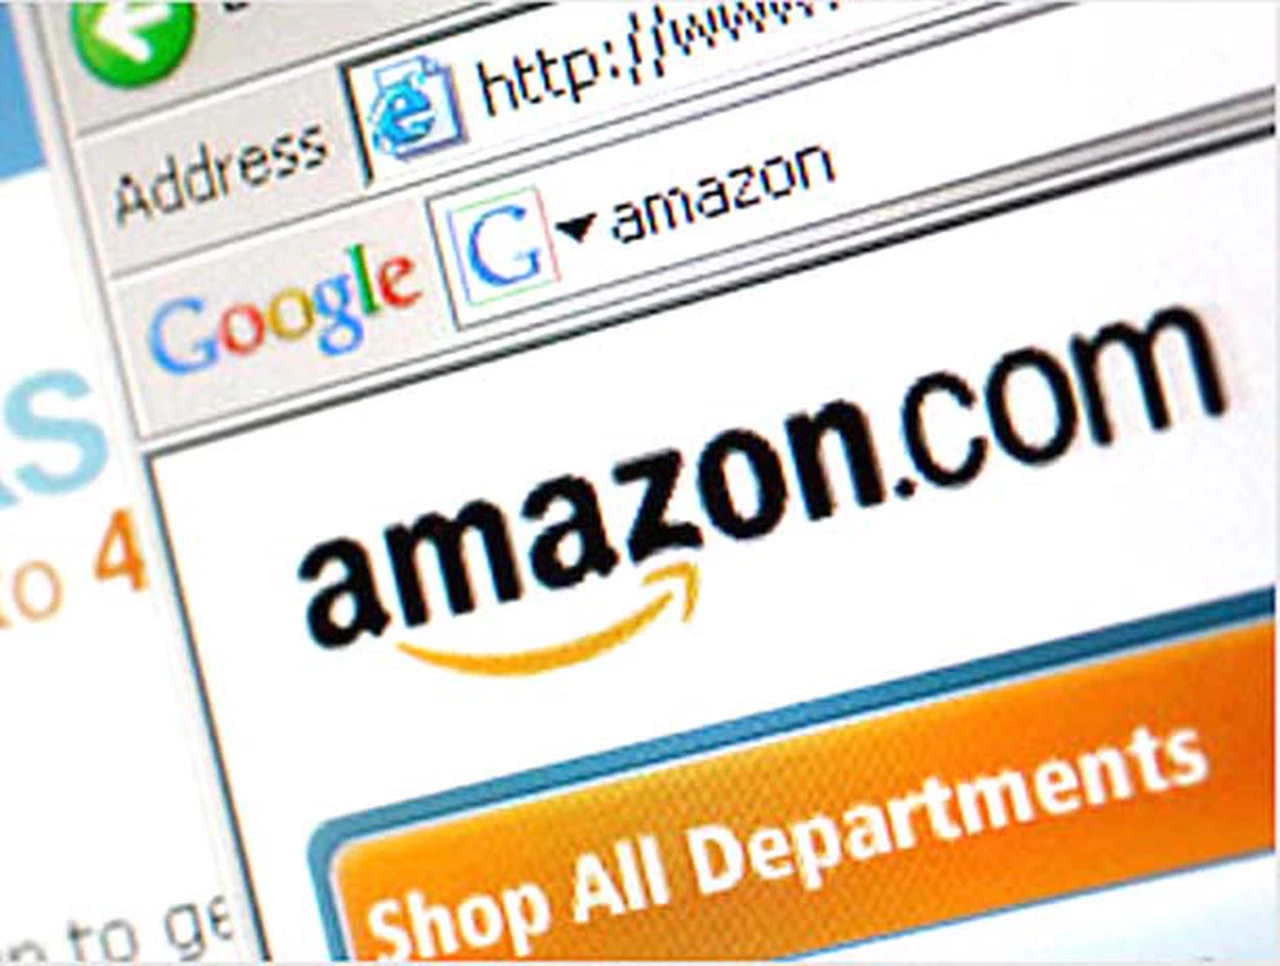 Las editoriales dieron a Amazon un ultimátum por los precios de "ebooks"